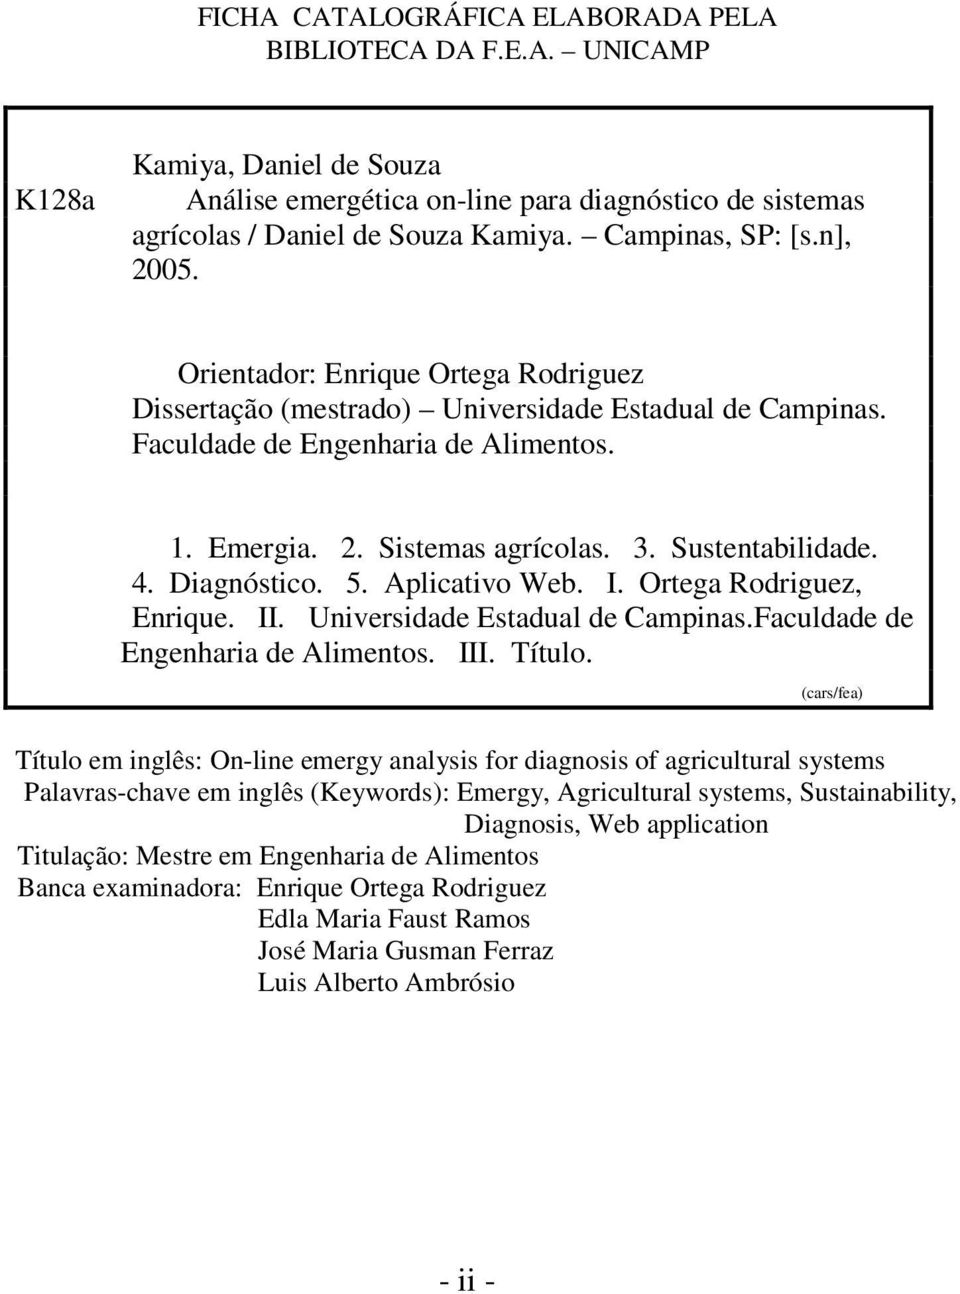 Sustentabilidade. 4. Diagnóstico. 5. Aplicativo Web. I. Ortega Rodriguez, Enrique. II. Universidade Estadual de Campinas.Faculdade de Engenharia de Alimentos. III. Título.